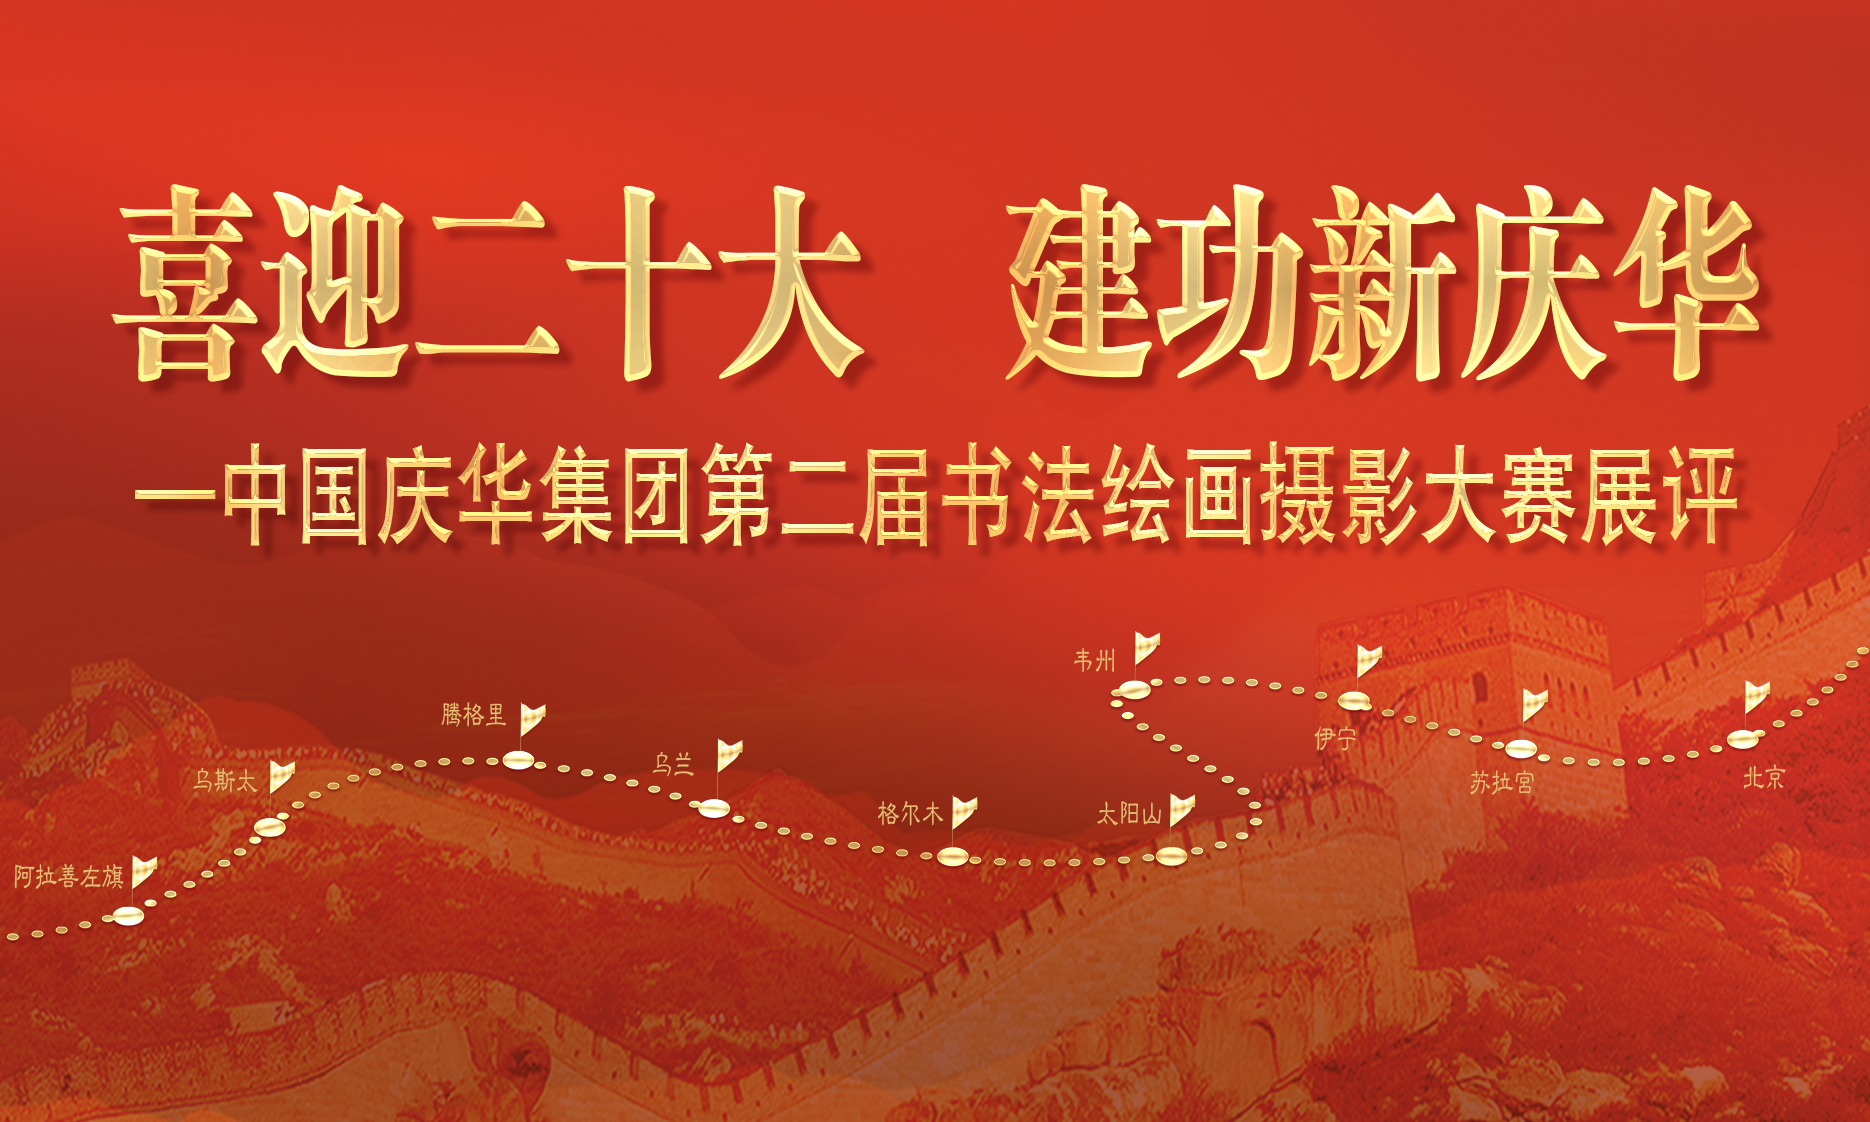 中國慶華能源集團“喜迎二十大 建功新慶華”書法、繪畫、攝影展